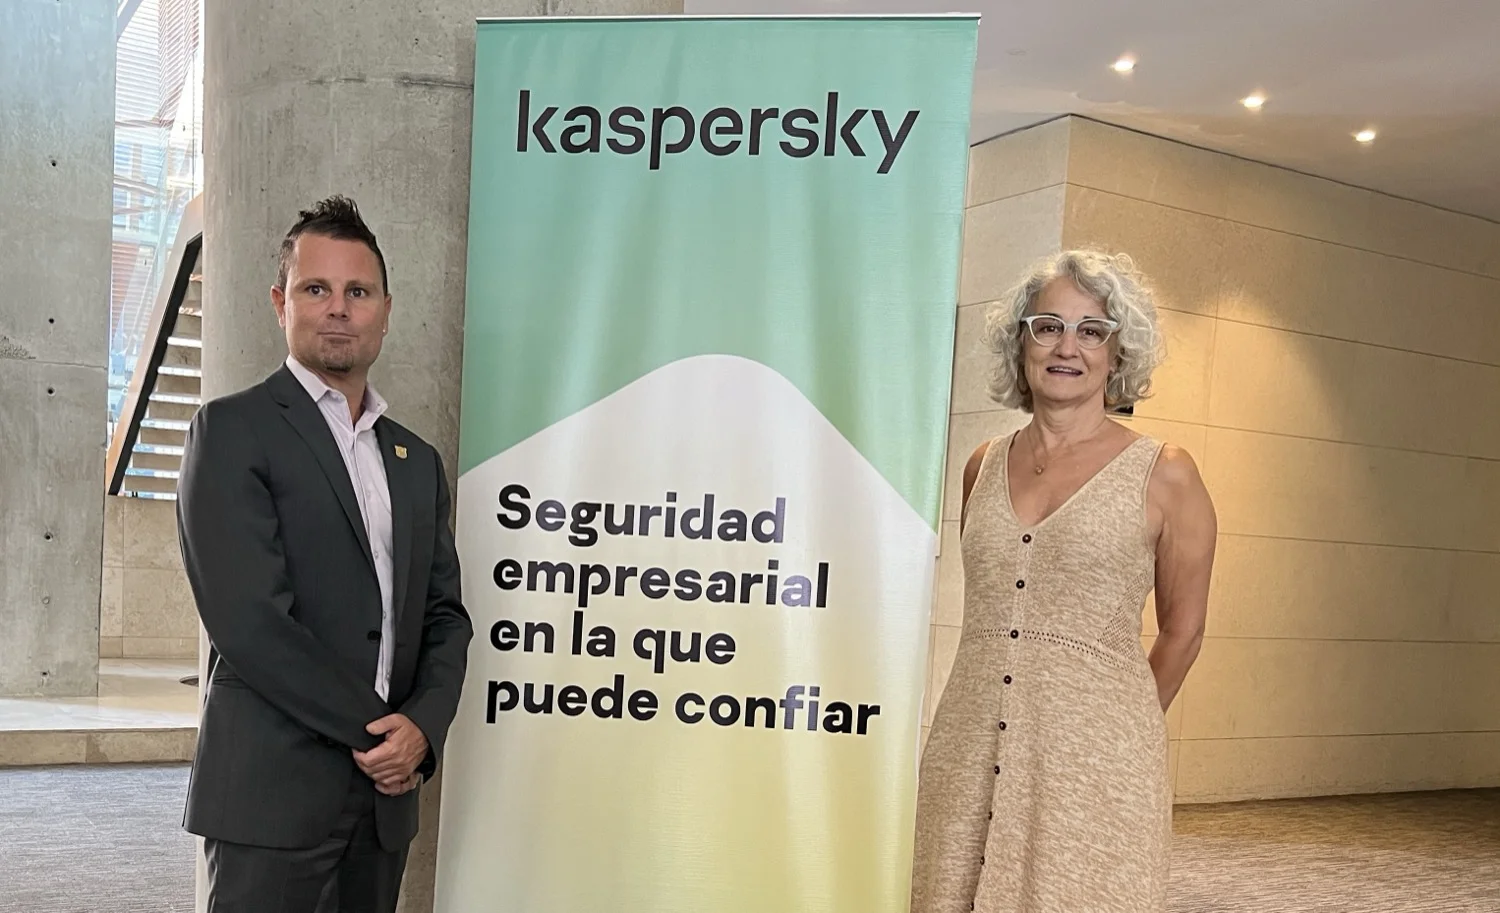 Kaspersky Next, la nueva línea de productos para empresas